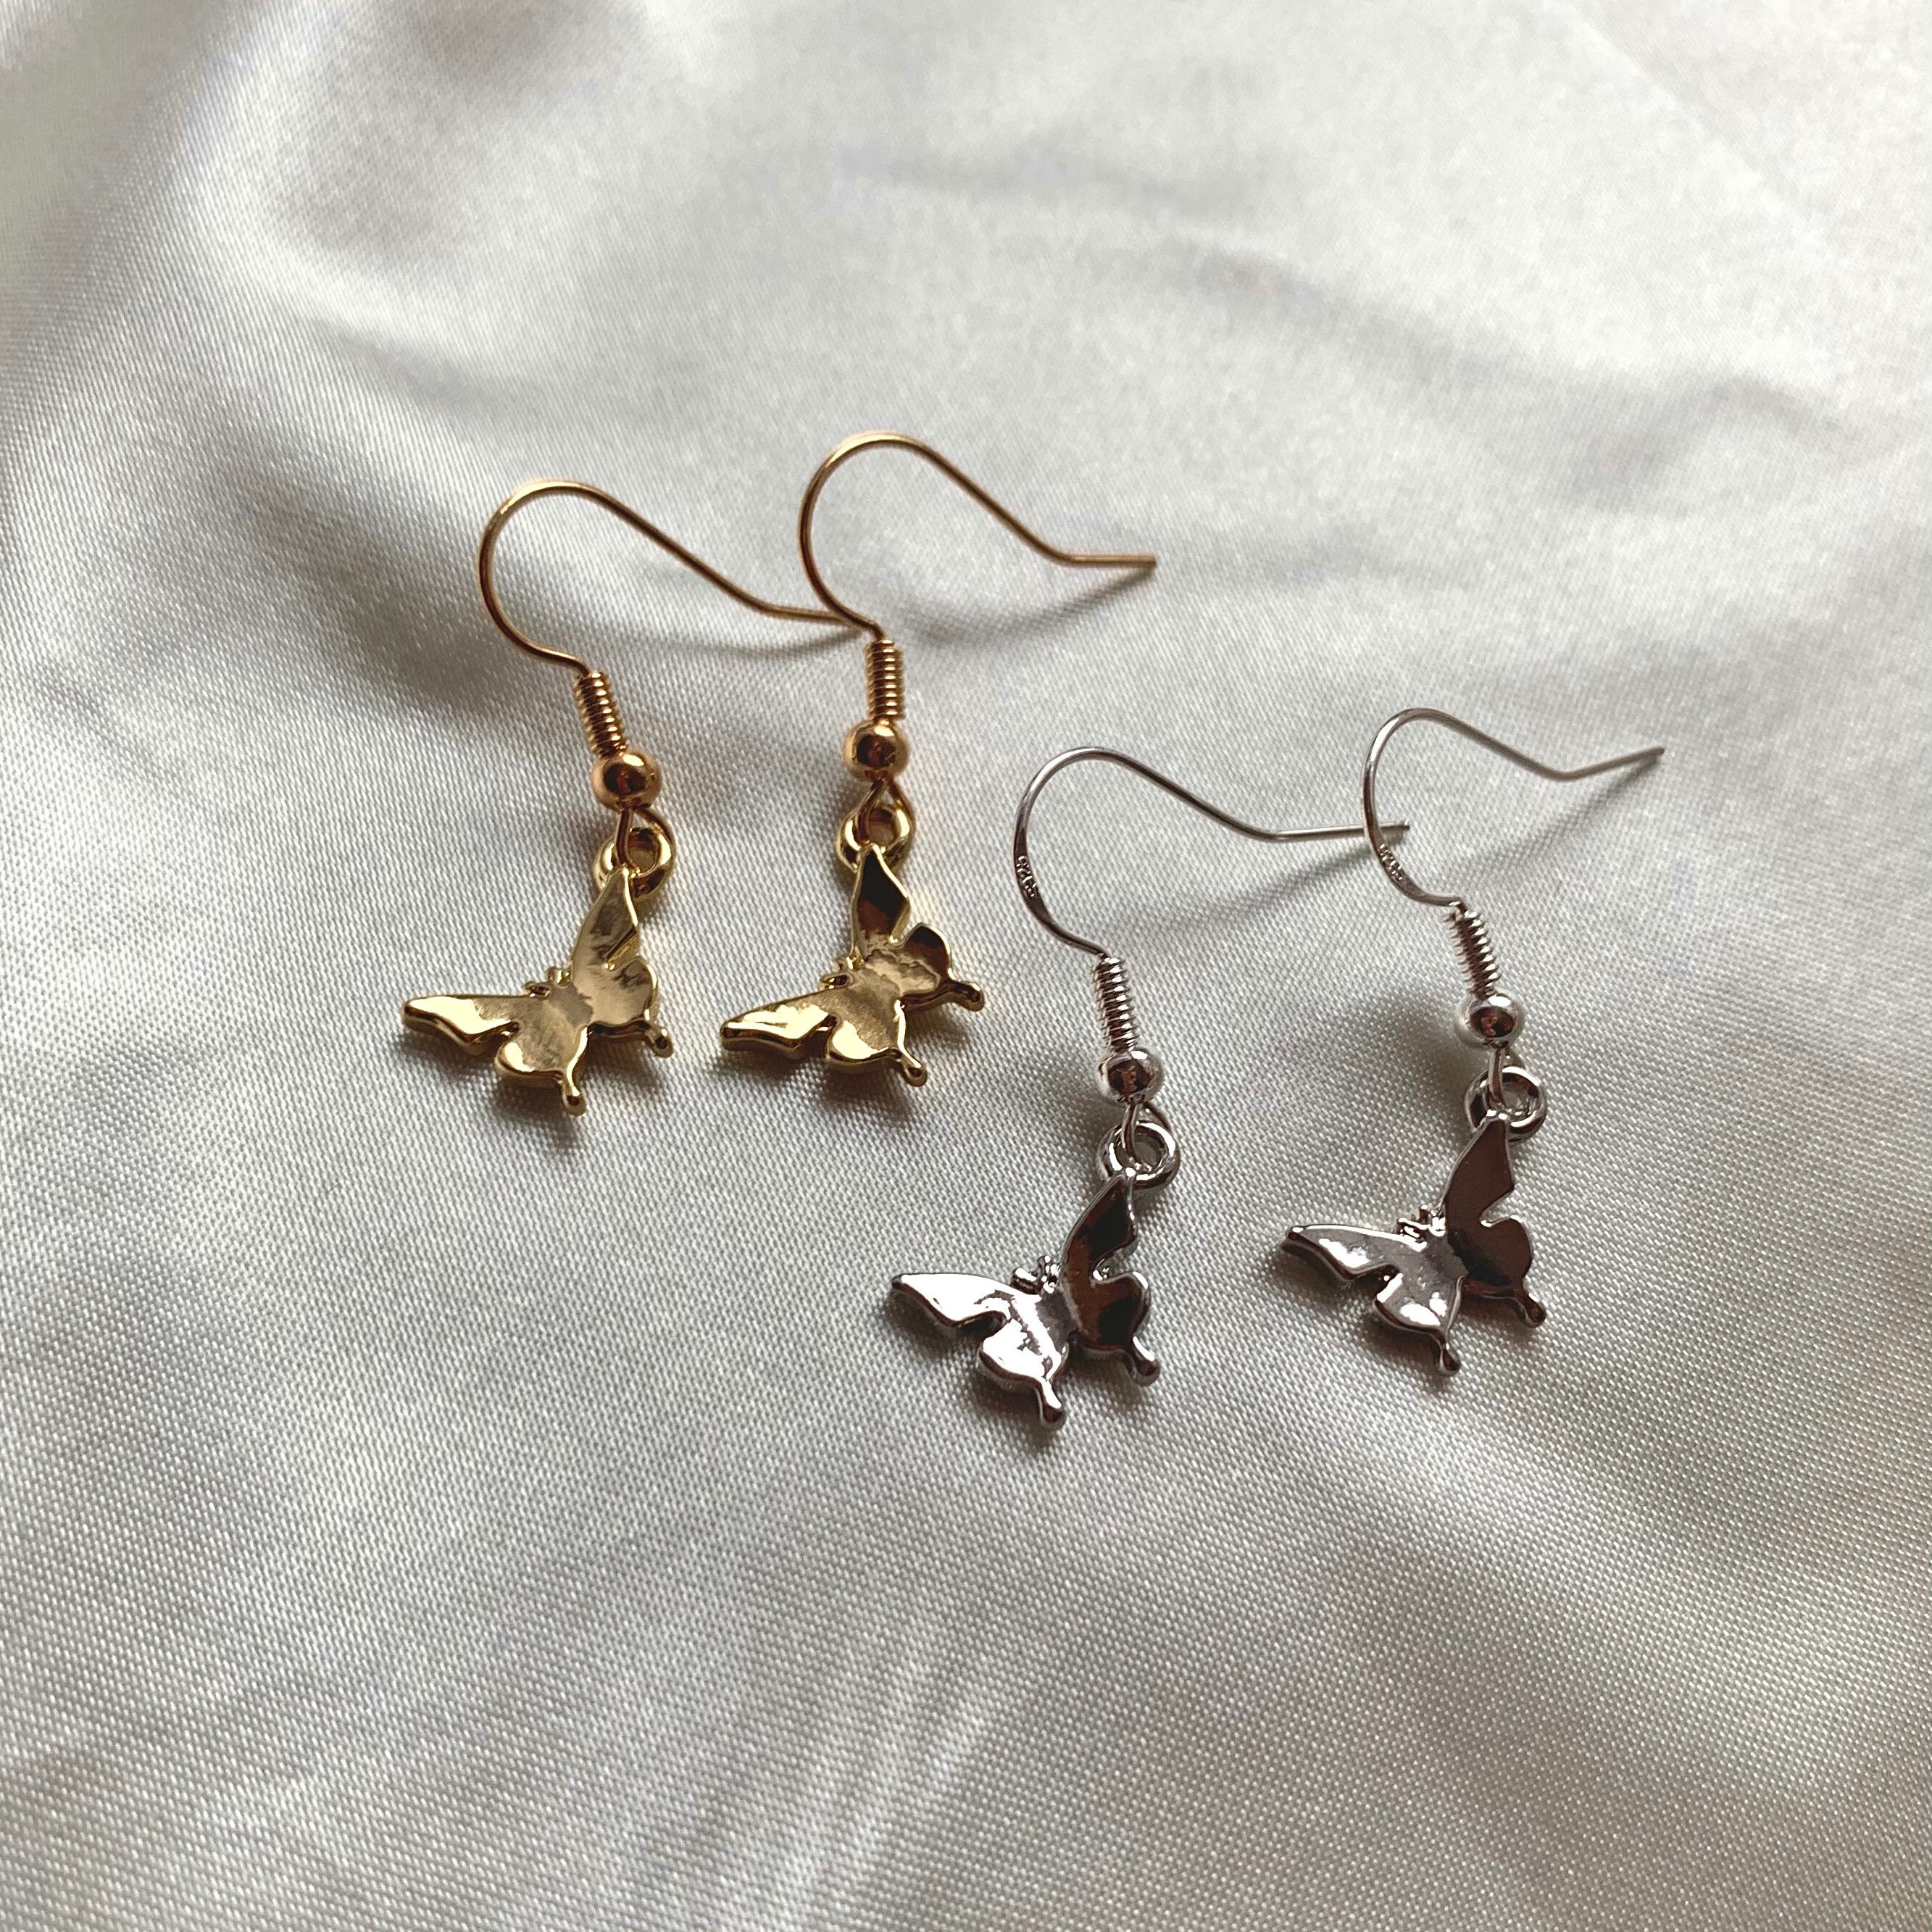 Beautiful minimalist butterfly earrings in silver or gold drop | Etsy